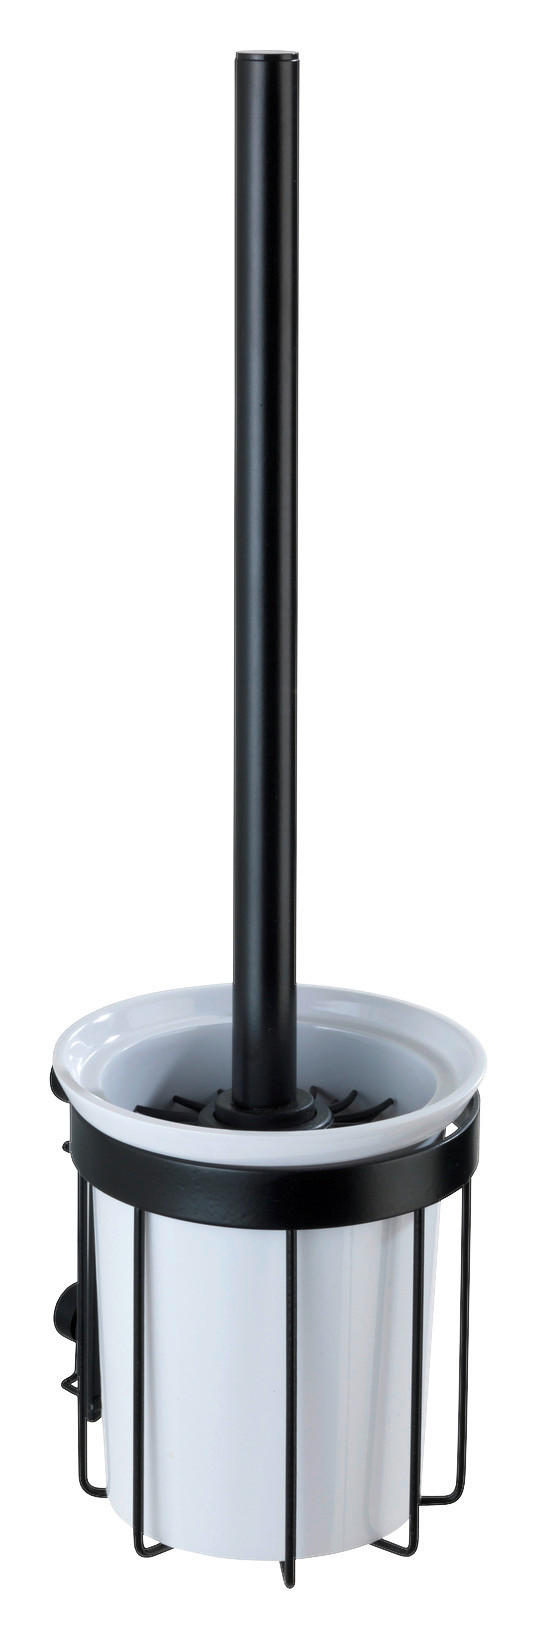 TOALETTBORSTSET i plast  plast   - svart, Basics, metall/plast (12/36/11cm)